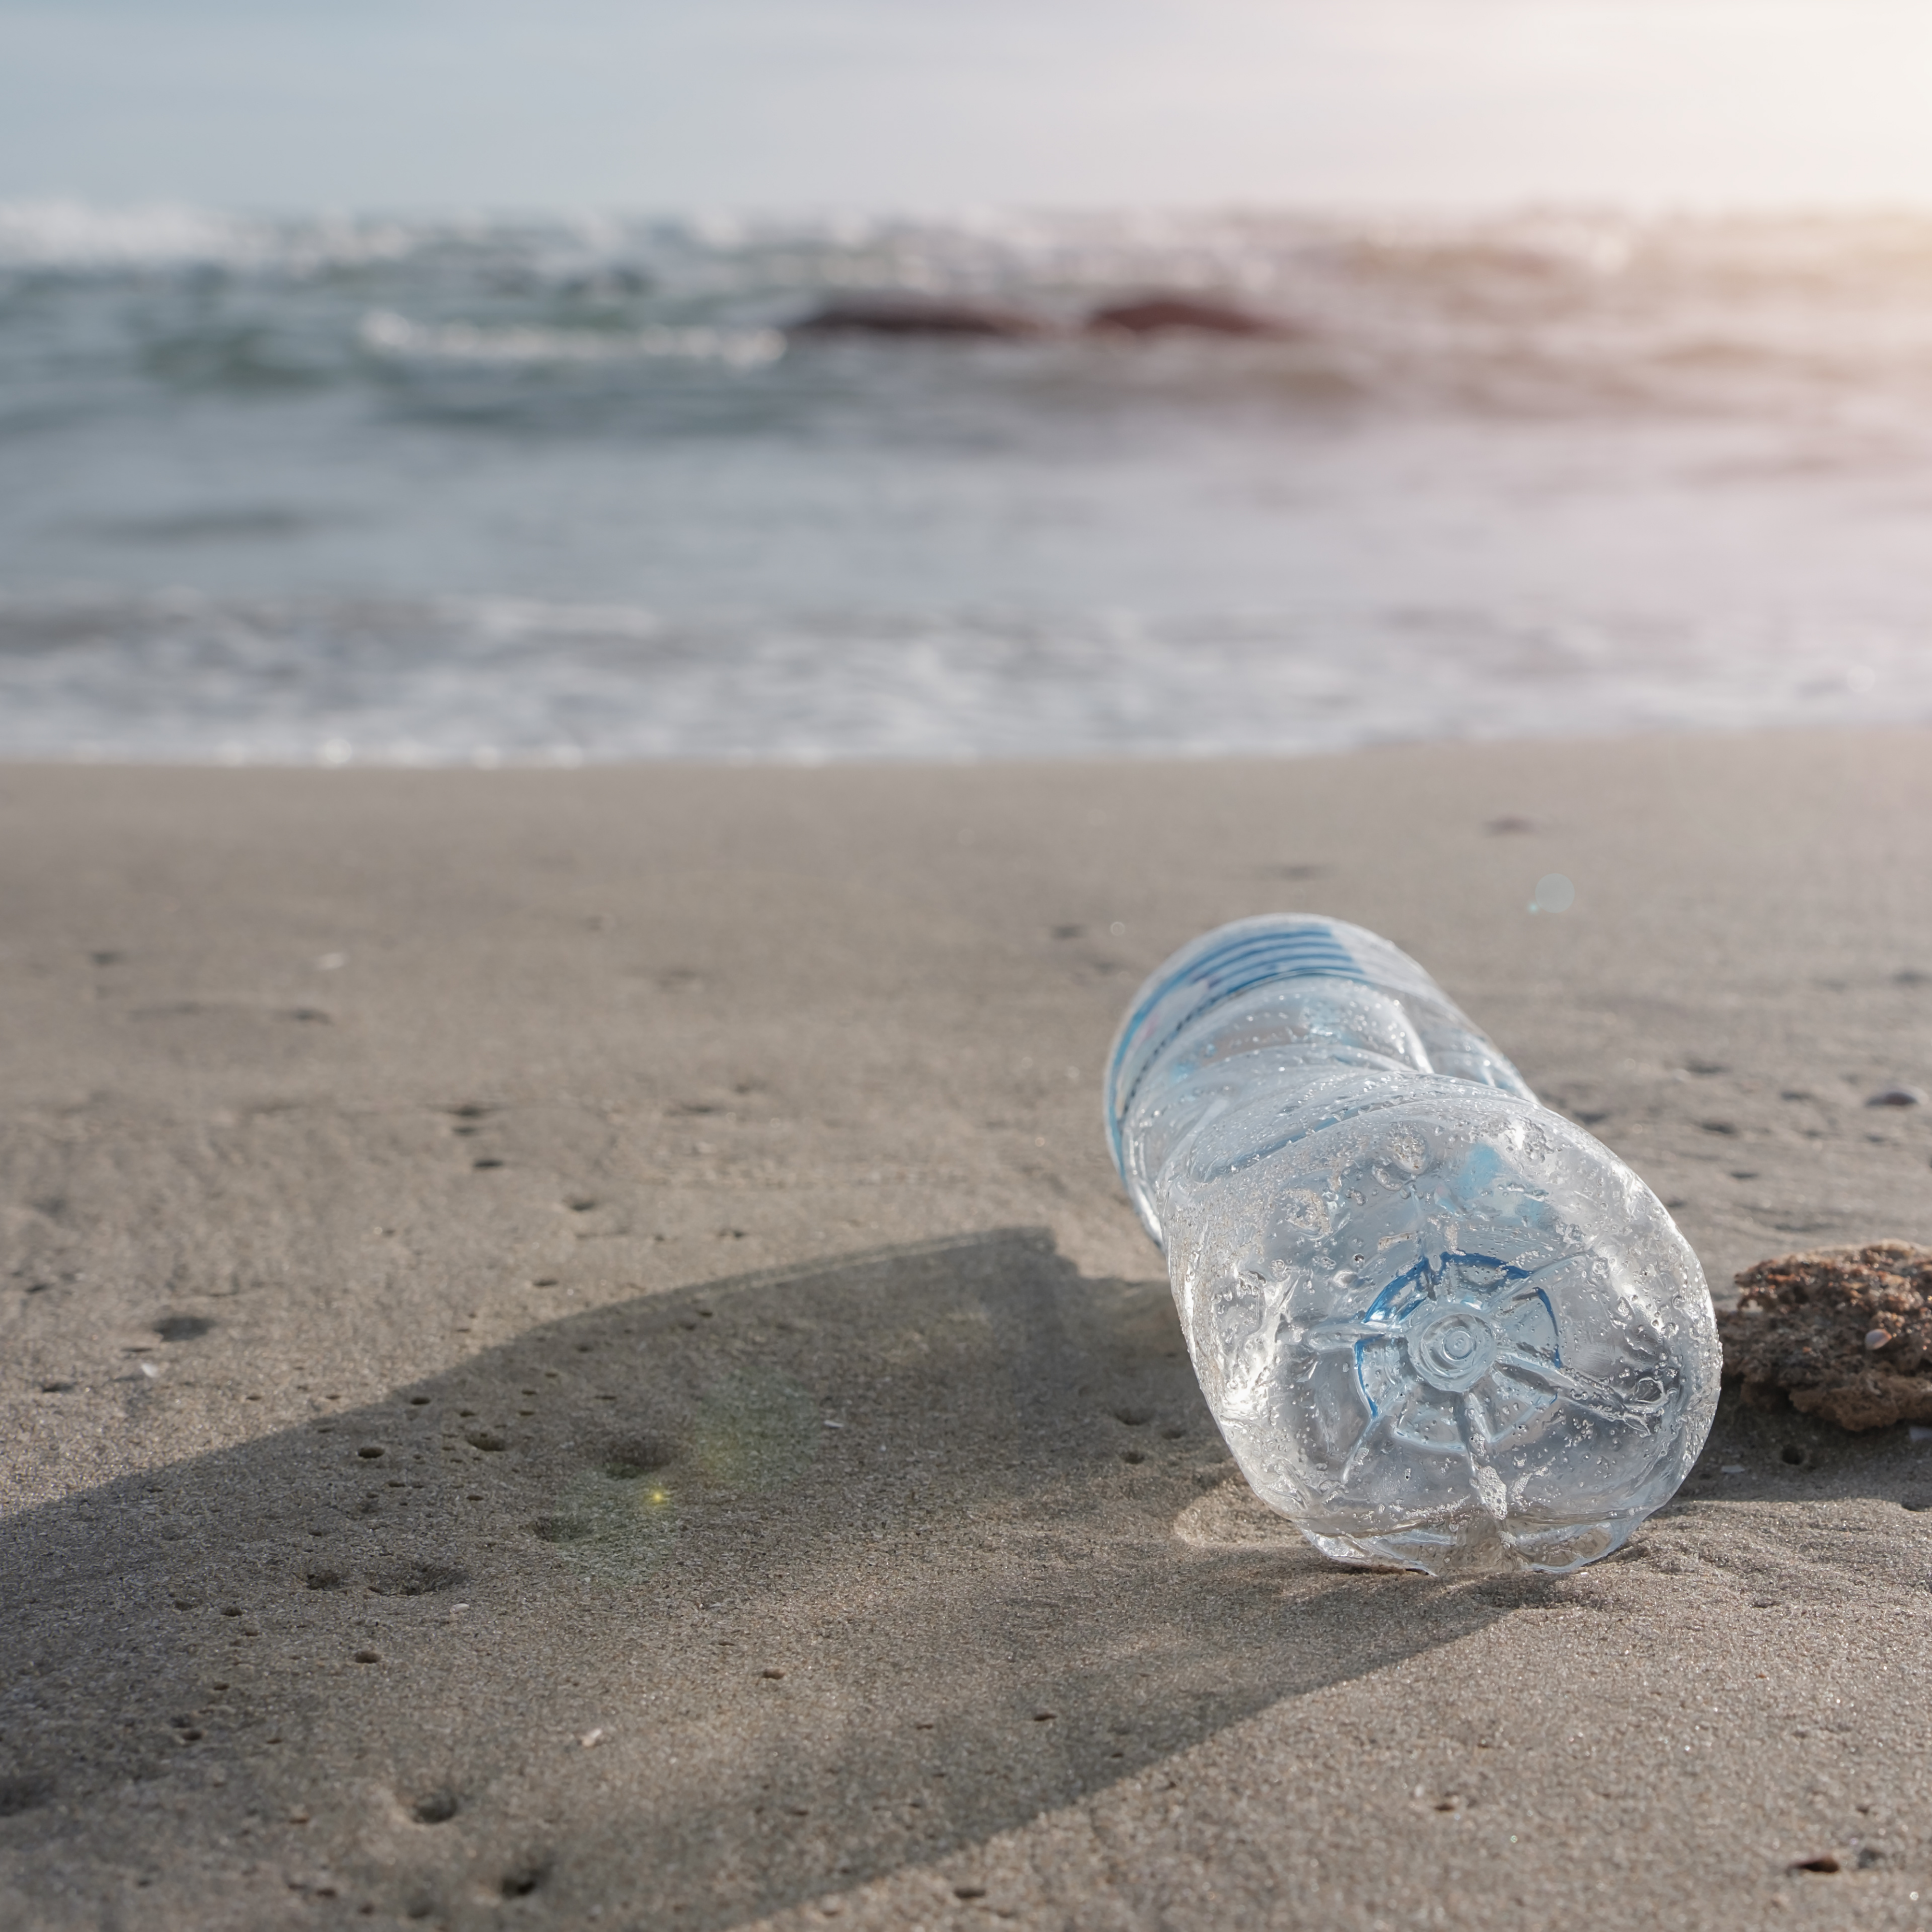 déchet plastique océan - pollution plastique océan